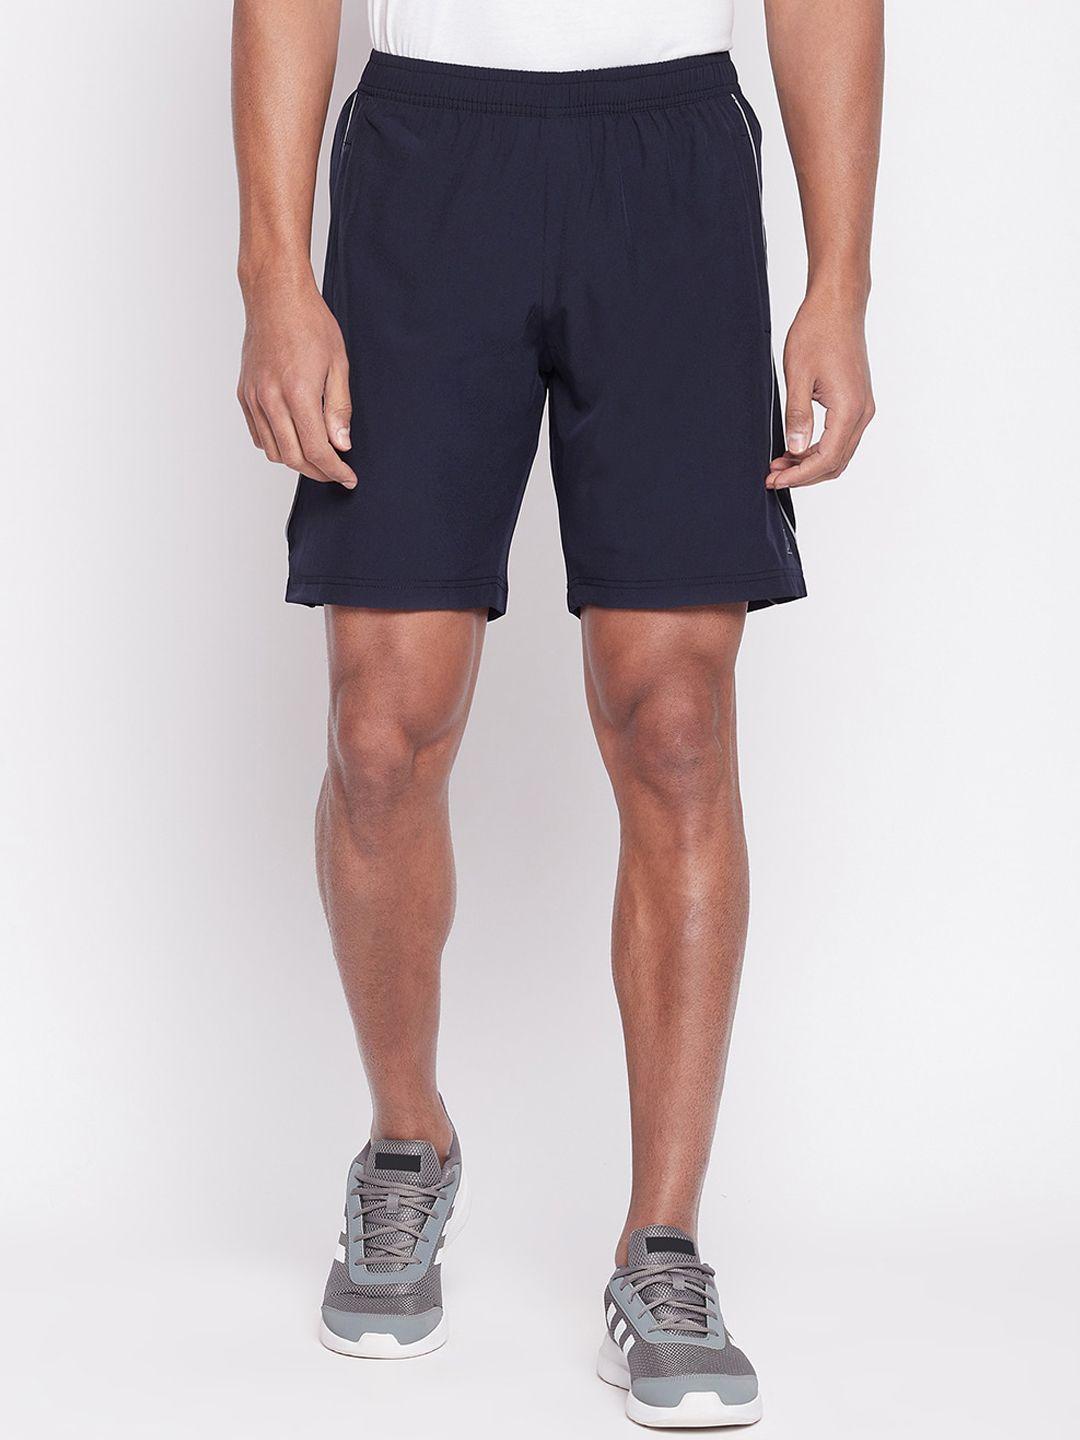 unpar men sports shorts